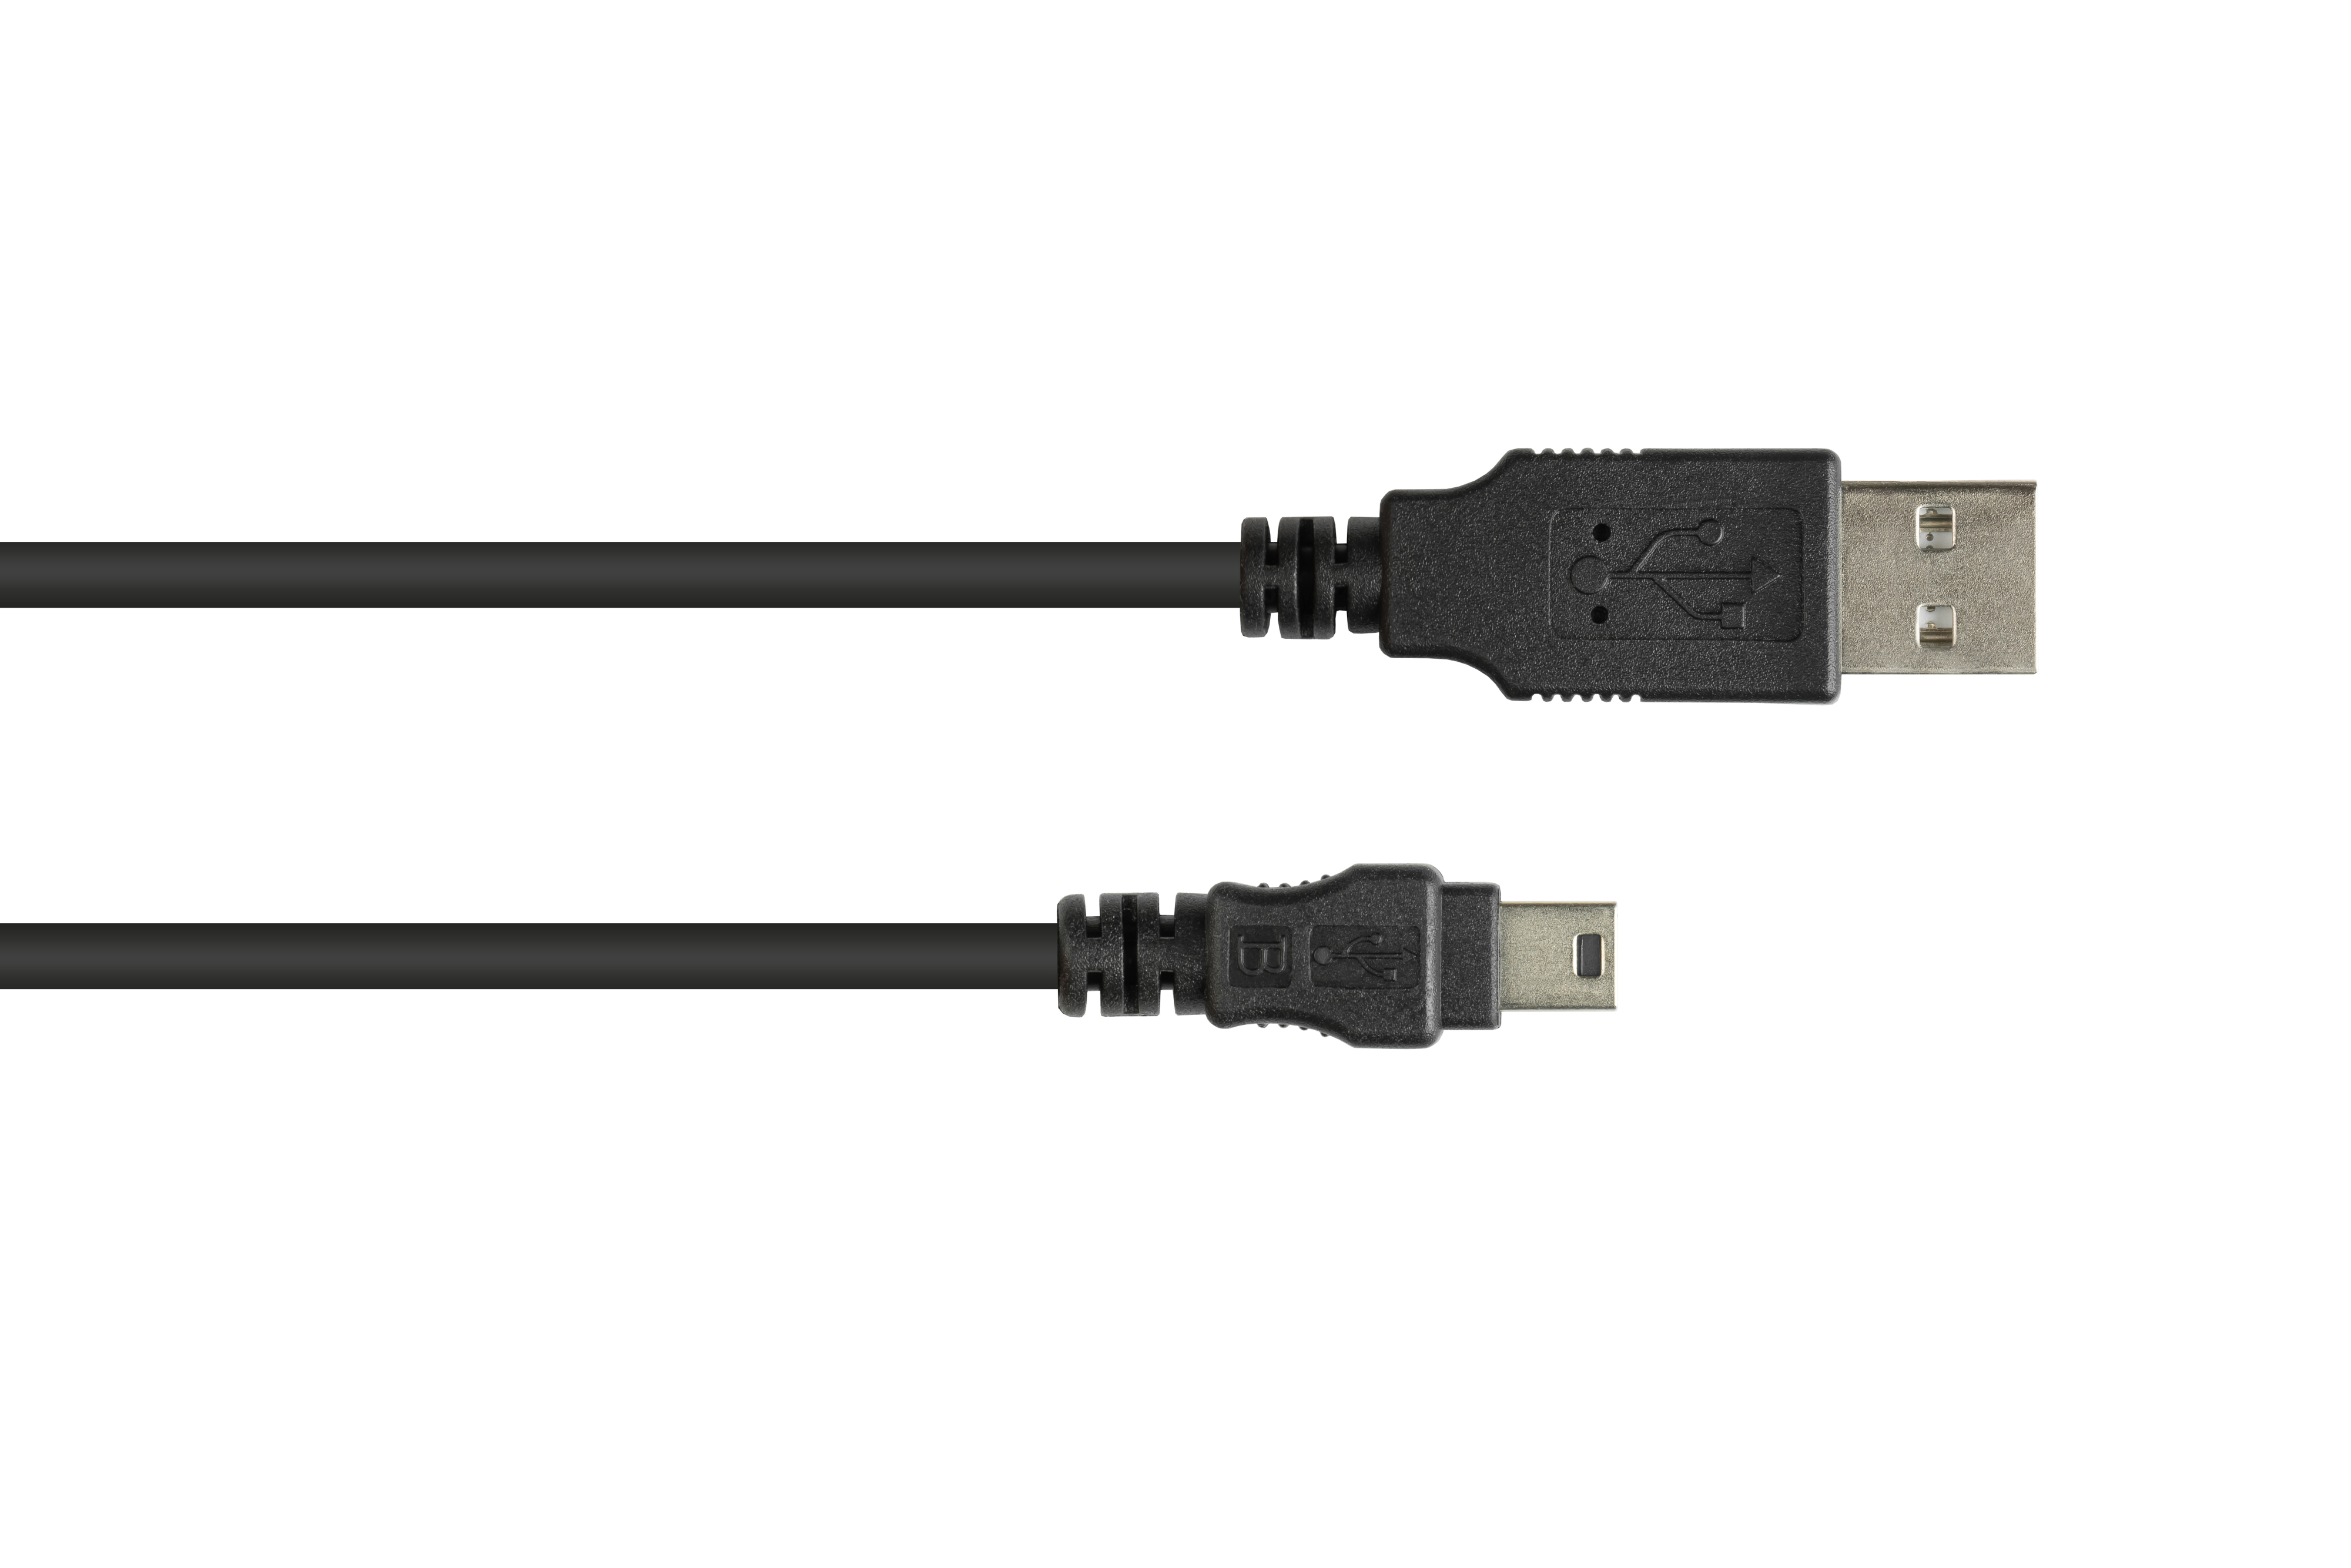 schwarz USB A Mini GOOD an B 5-pin, Anschlusskabel CONNECTIONS 2.0 Stecker Stecker